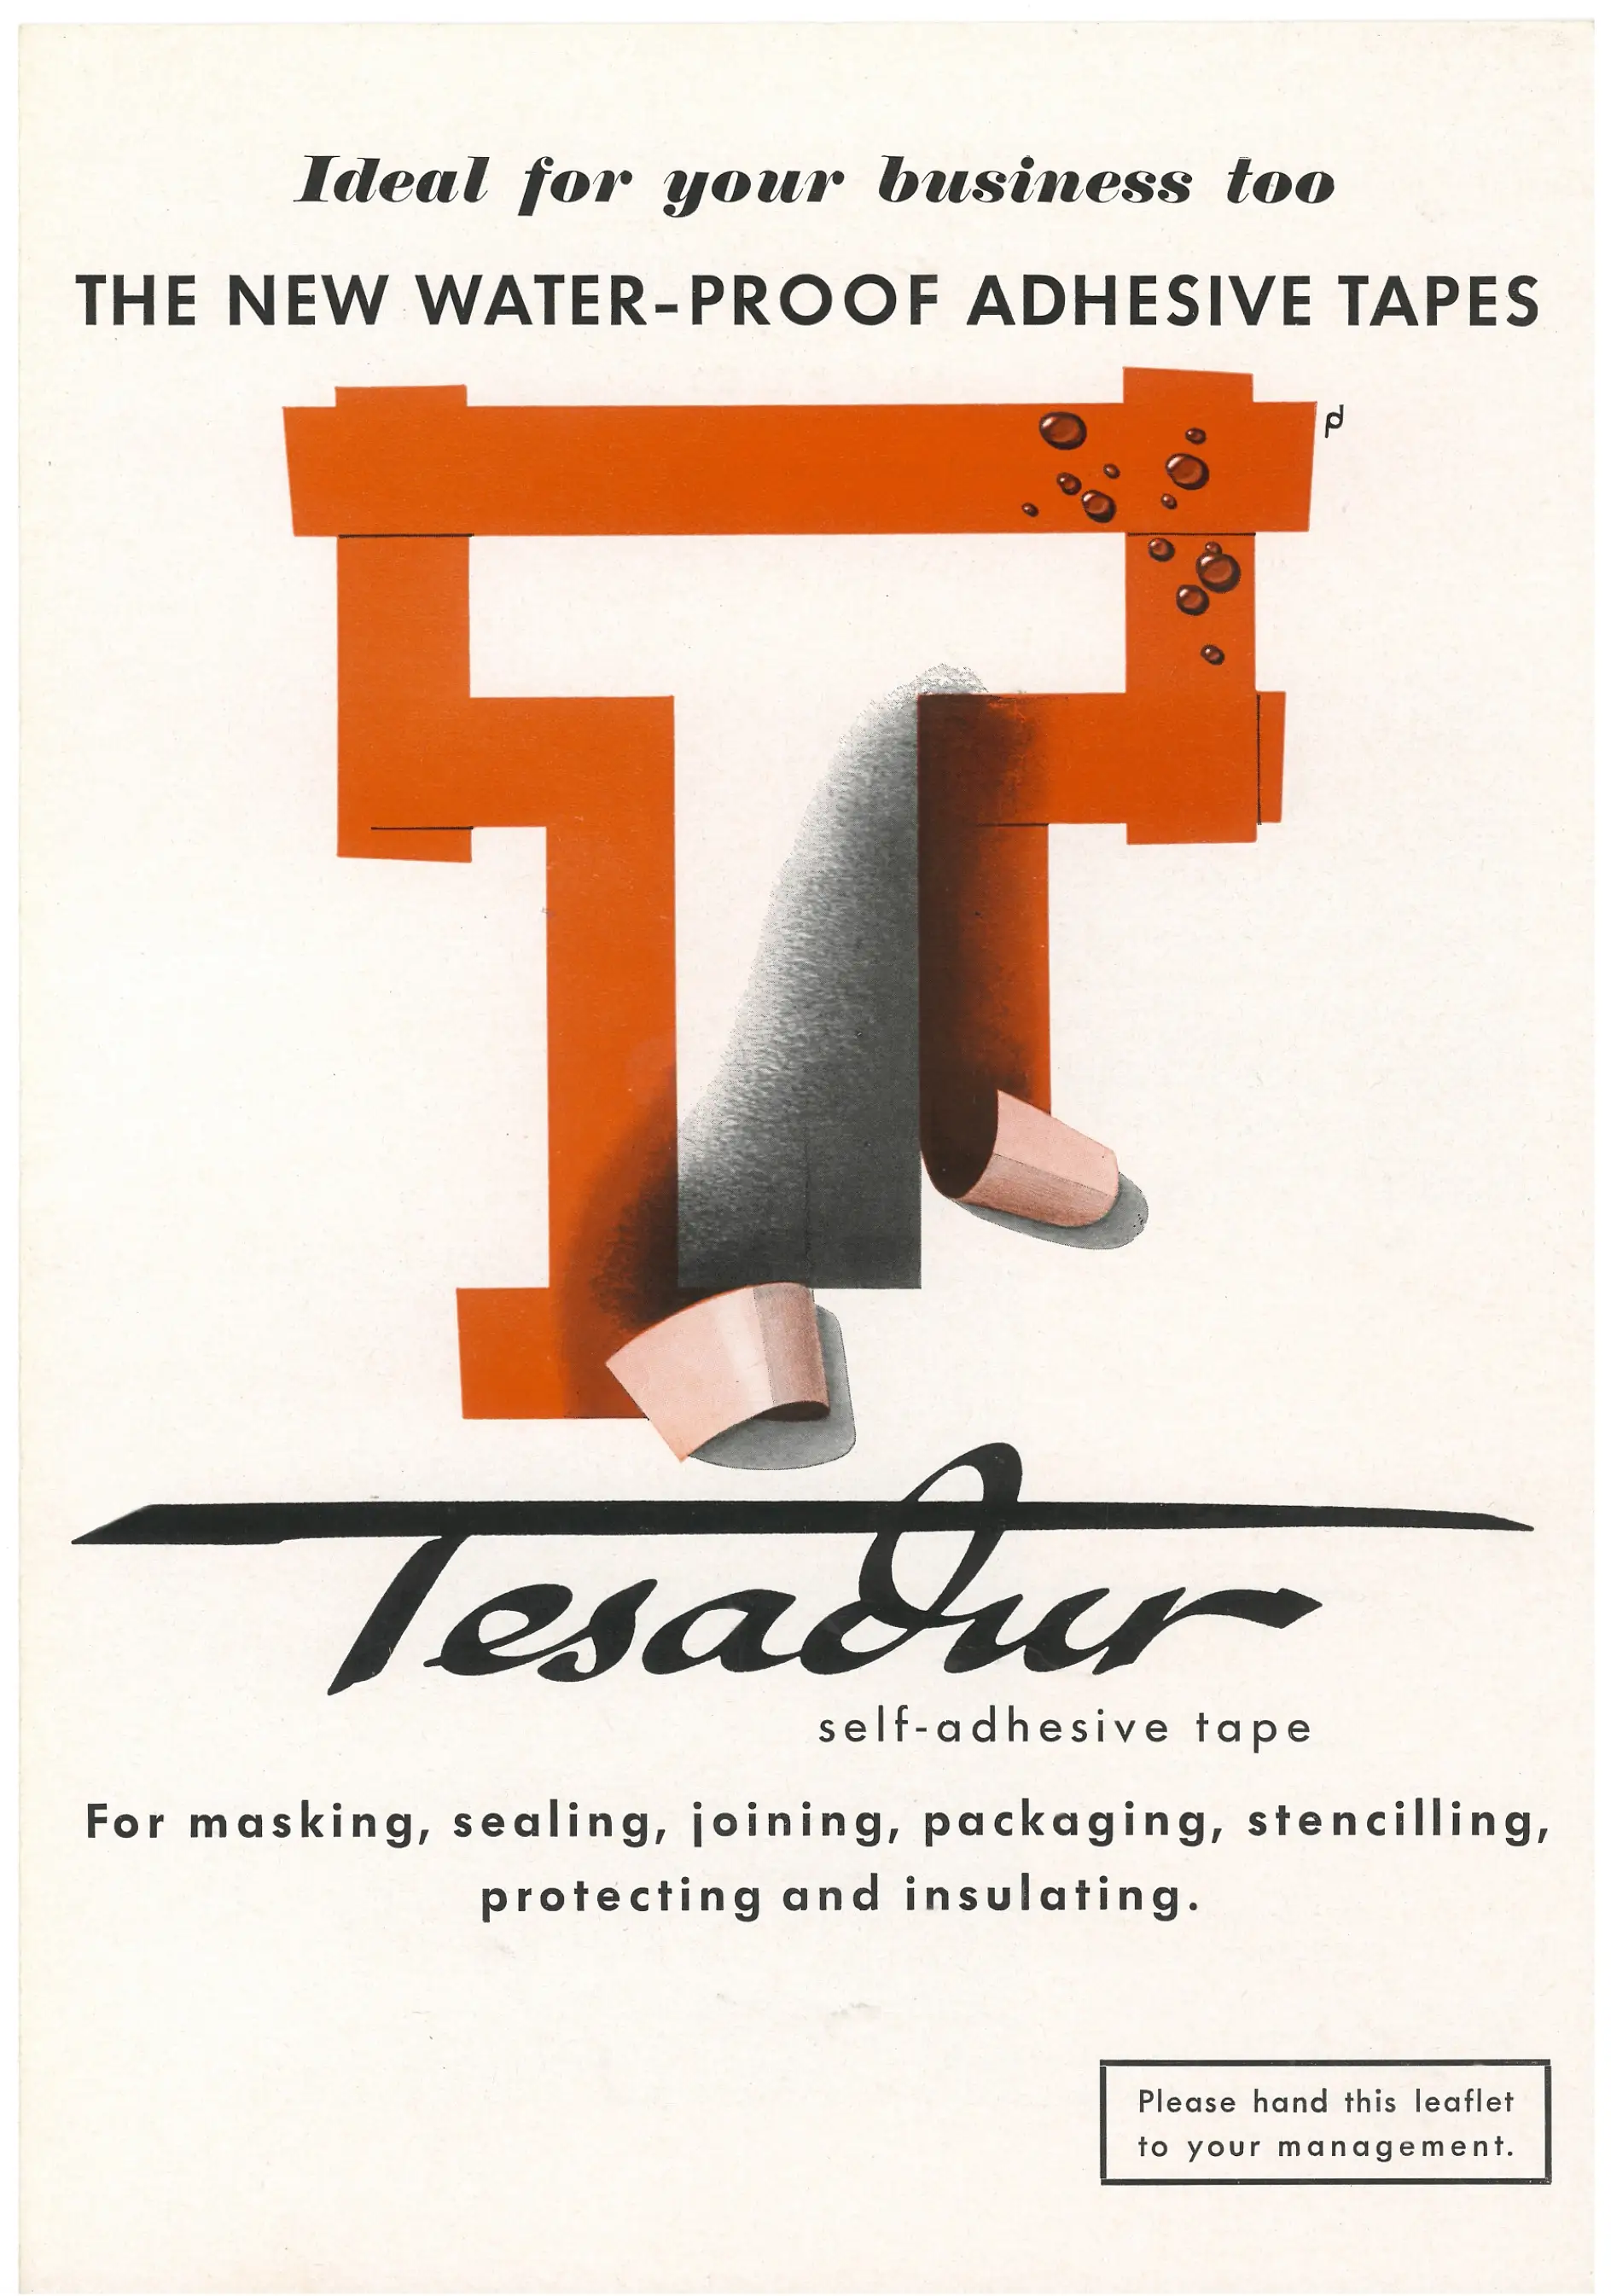 tesa advertised its waterproof Tesadur tape in the U.S. in 1953.